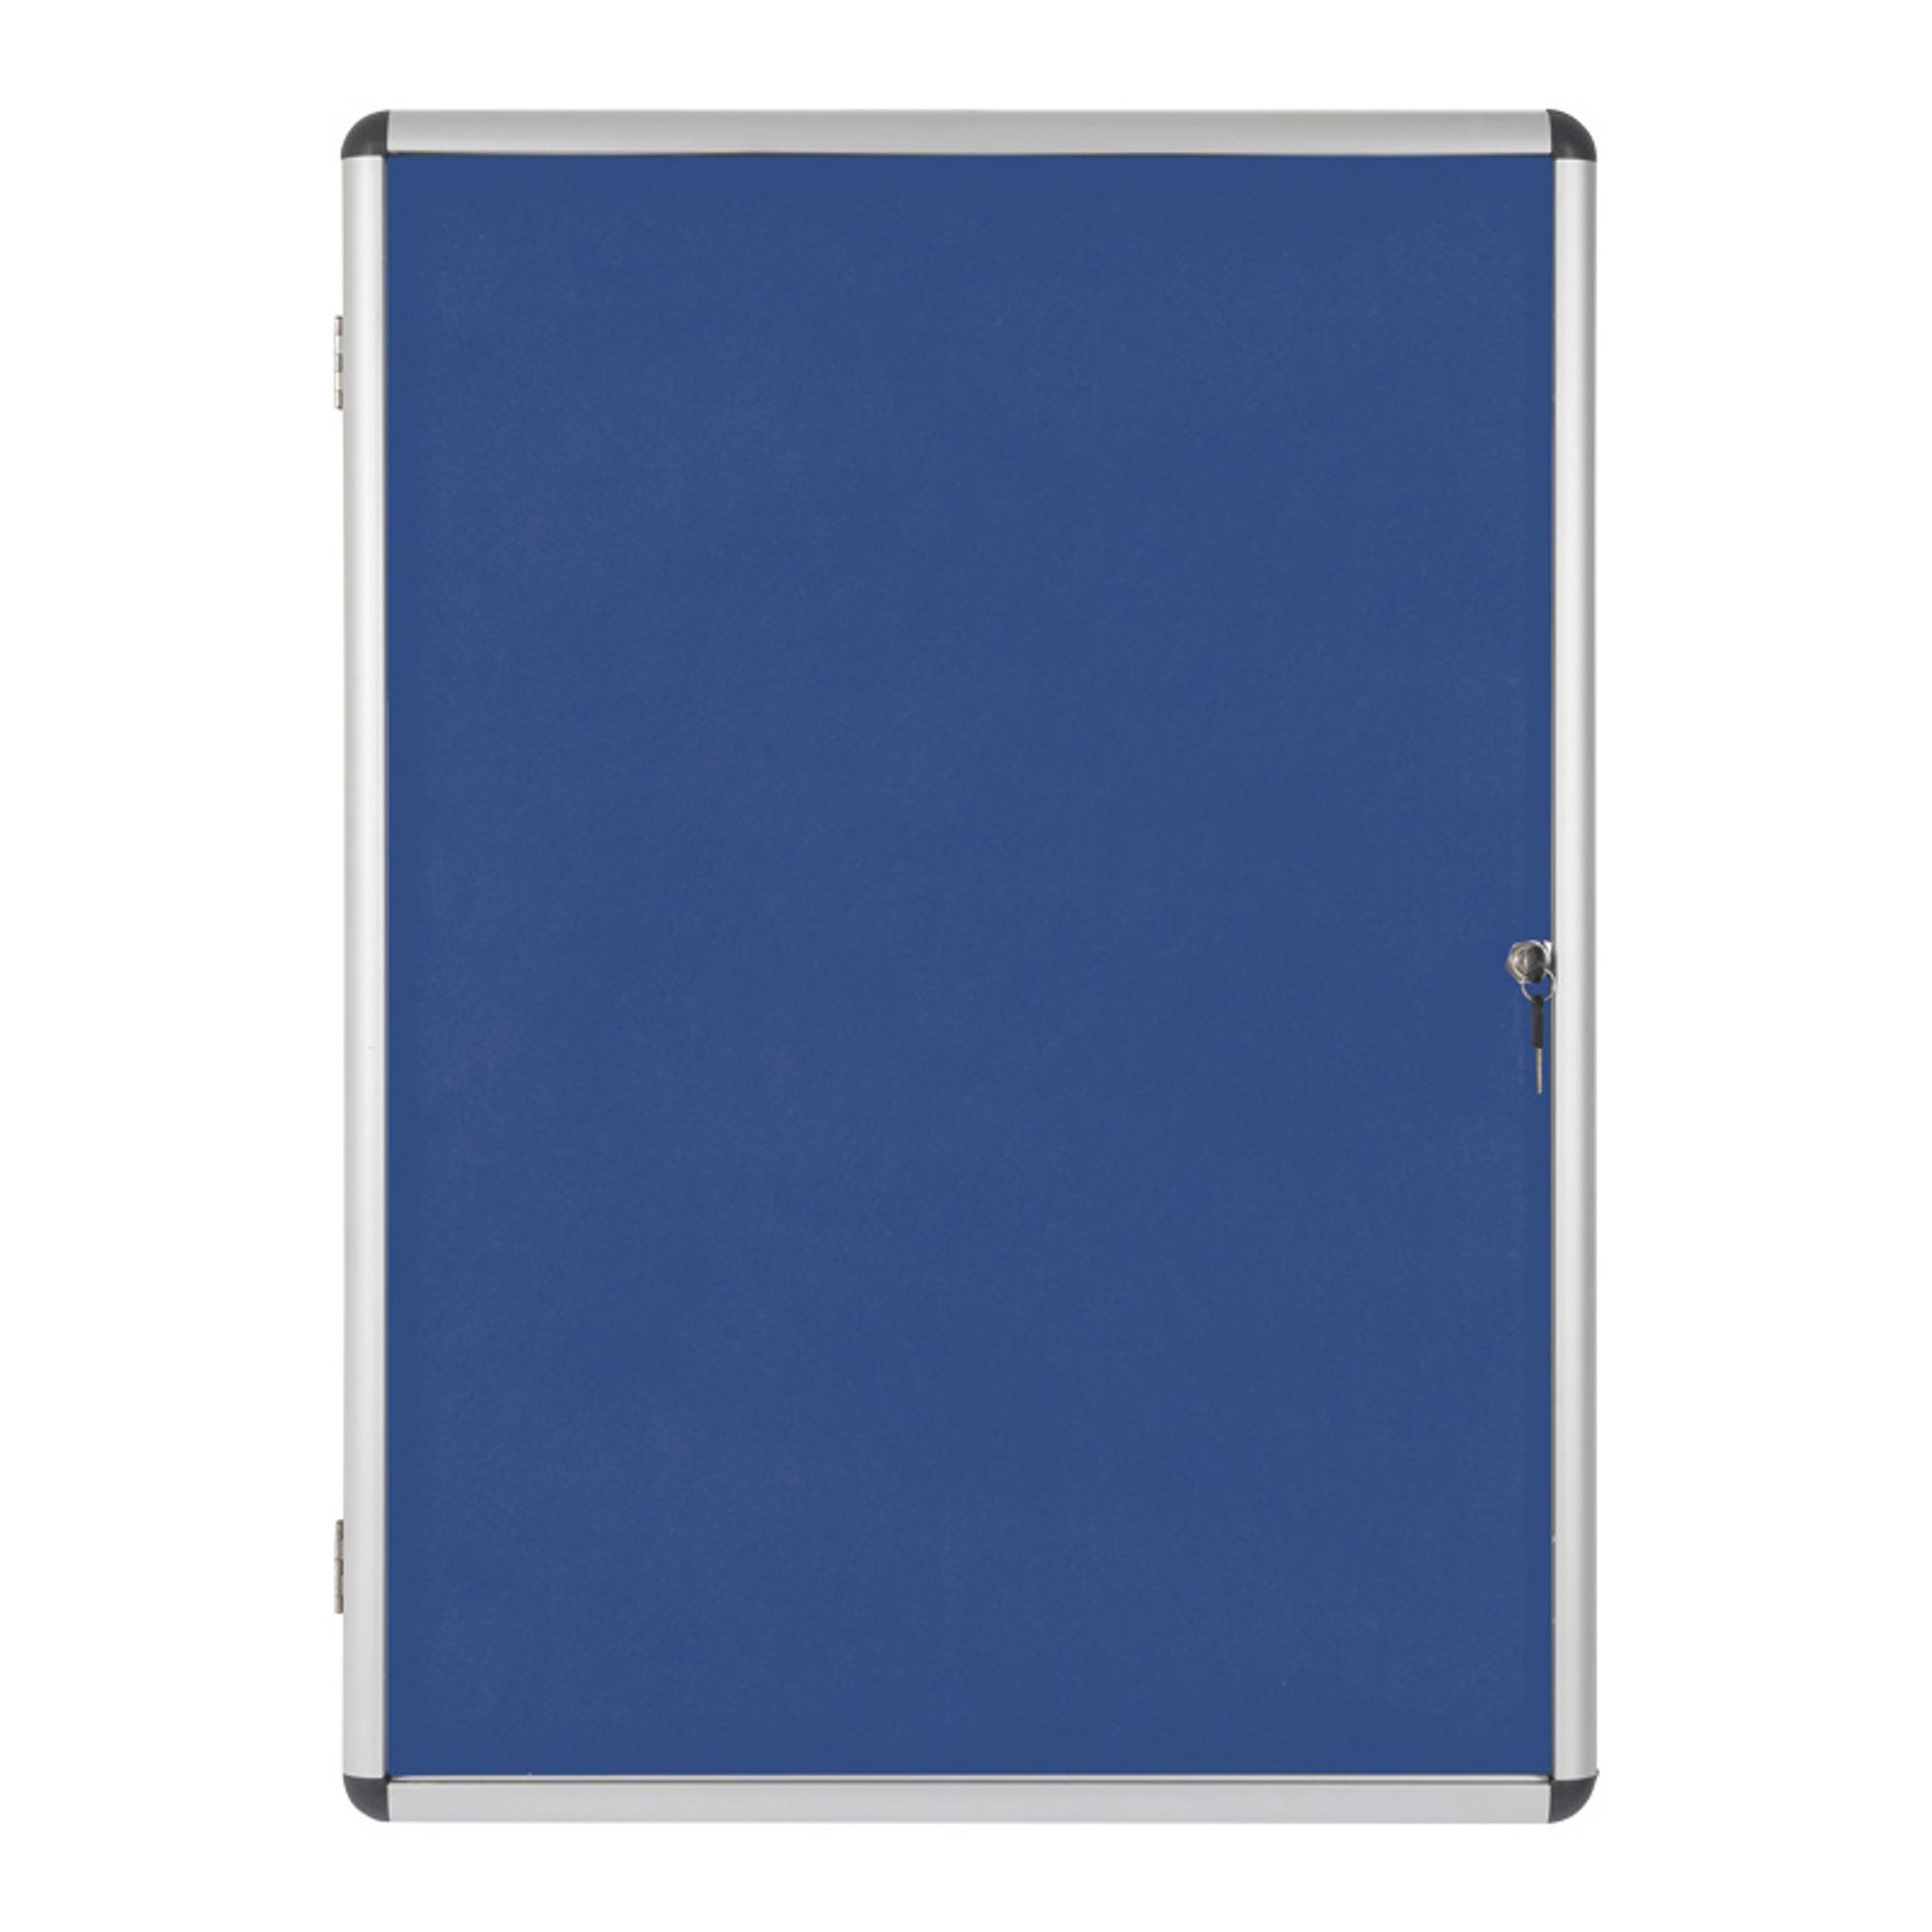 Gablota informacyjna z tekstylną powierzchnią, niebieska, 720 x 980 mm